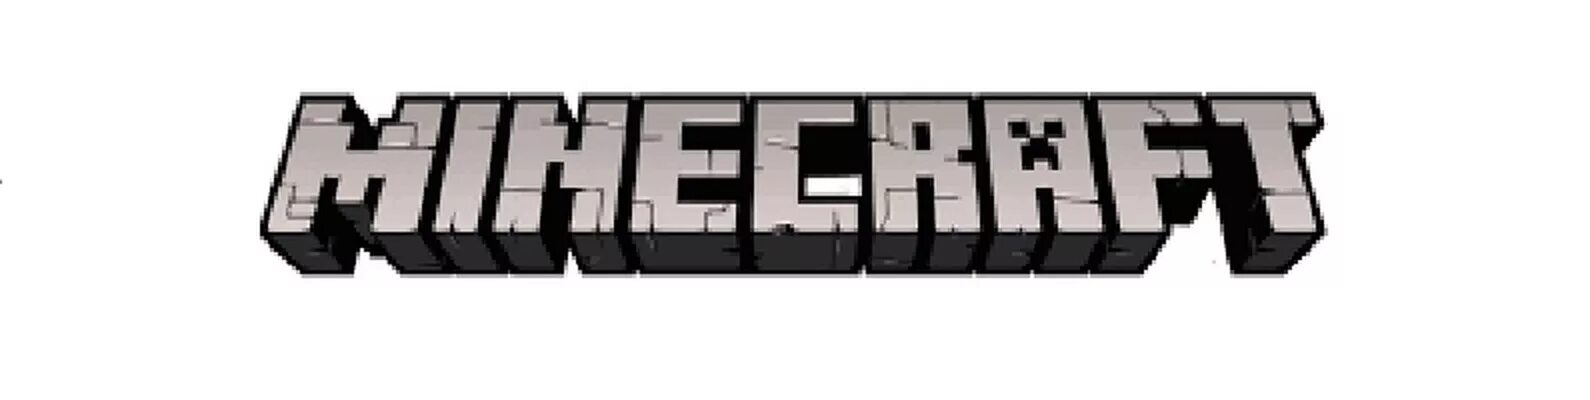 Minecraft logo png. Надпись из МАЙНКРАФТА. Логотип майнкрафт без фона. Логотип майнкрафт на прозрачном фоне. Майнкрафт надпись для печати.